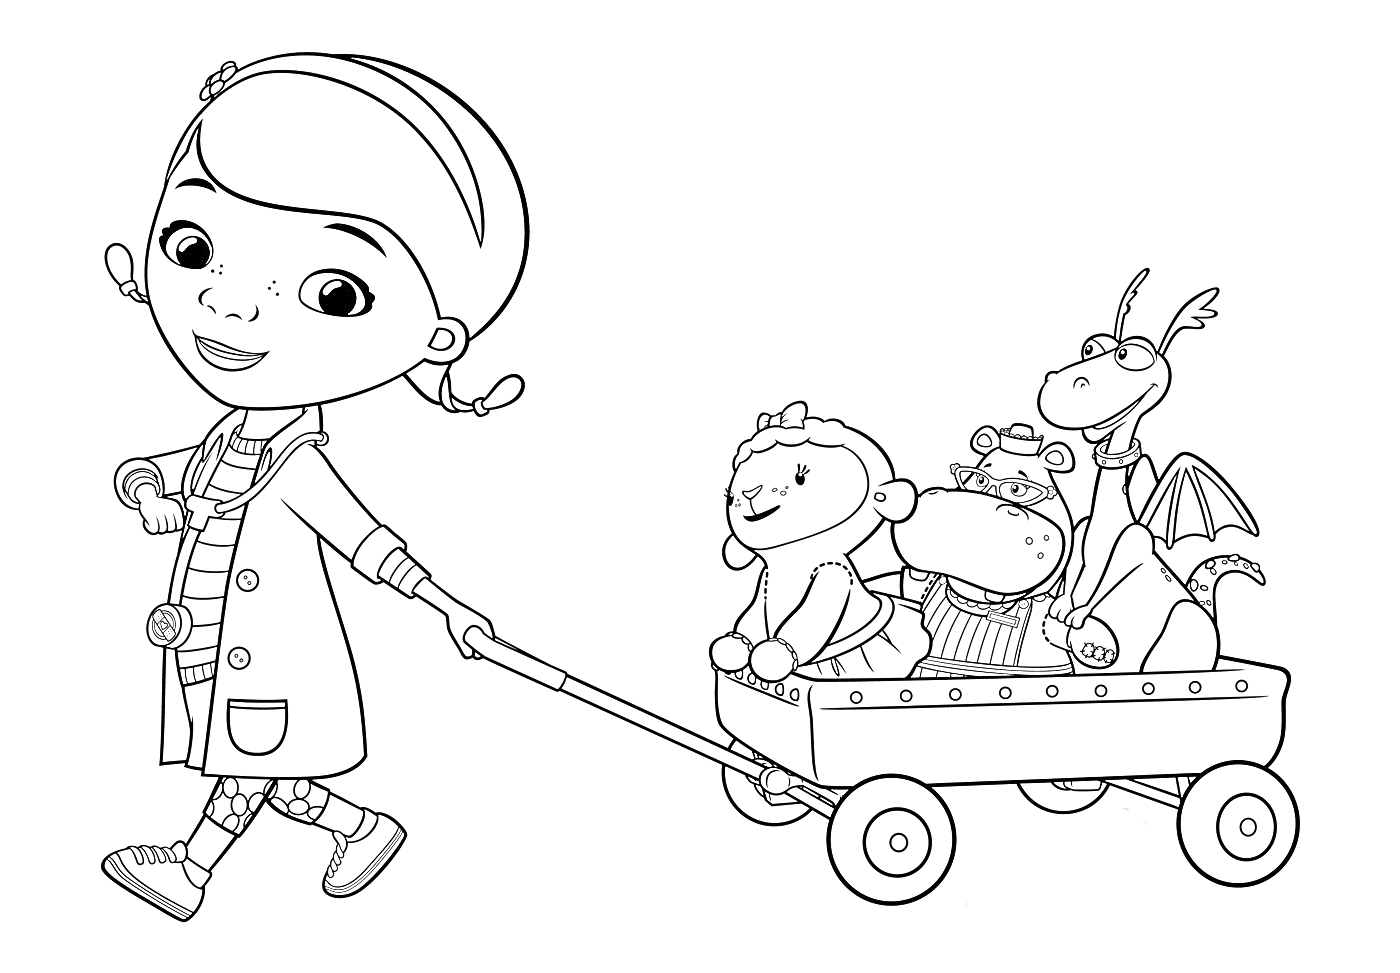 Раскраска Доктор Плюшева в халате тянет вагончик с игрушечными друзьями (ягнёнок, бегемот, дракон и ещё одна игрушка)